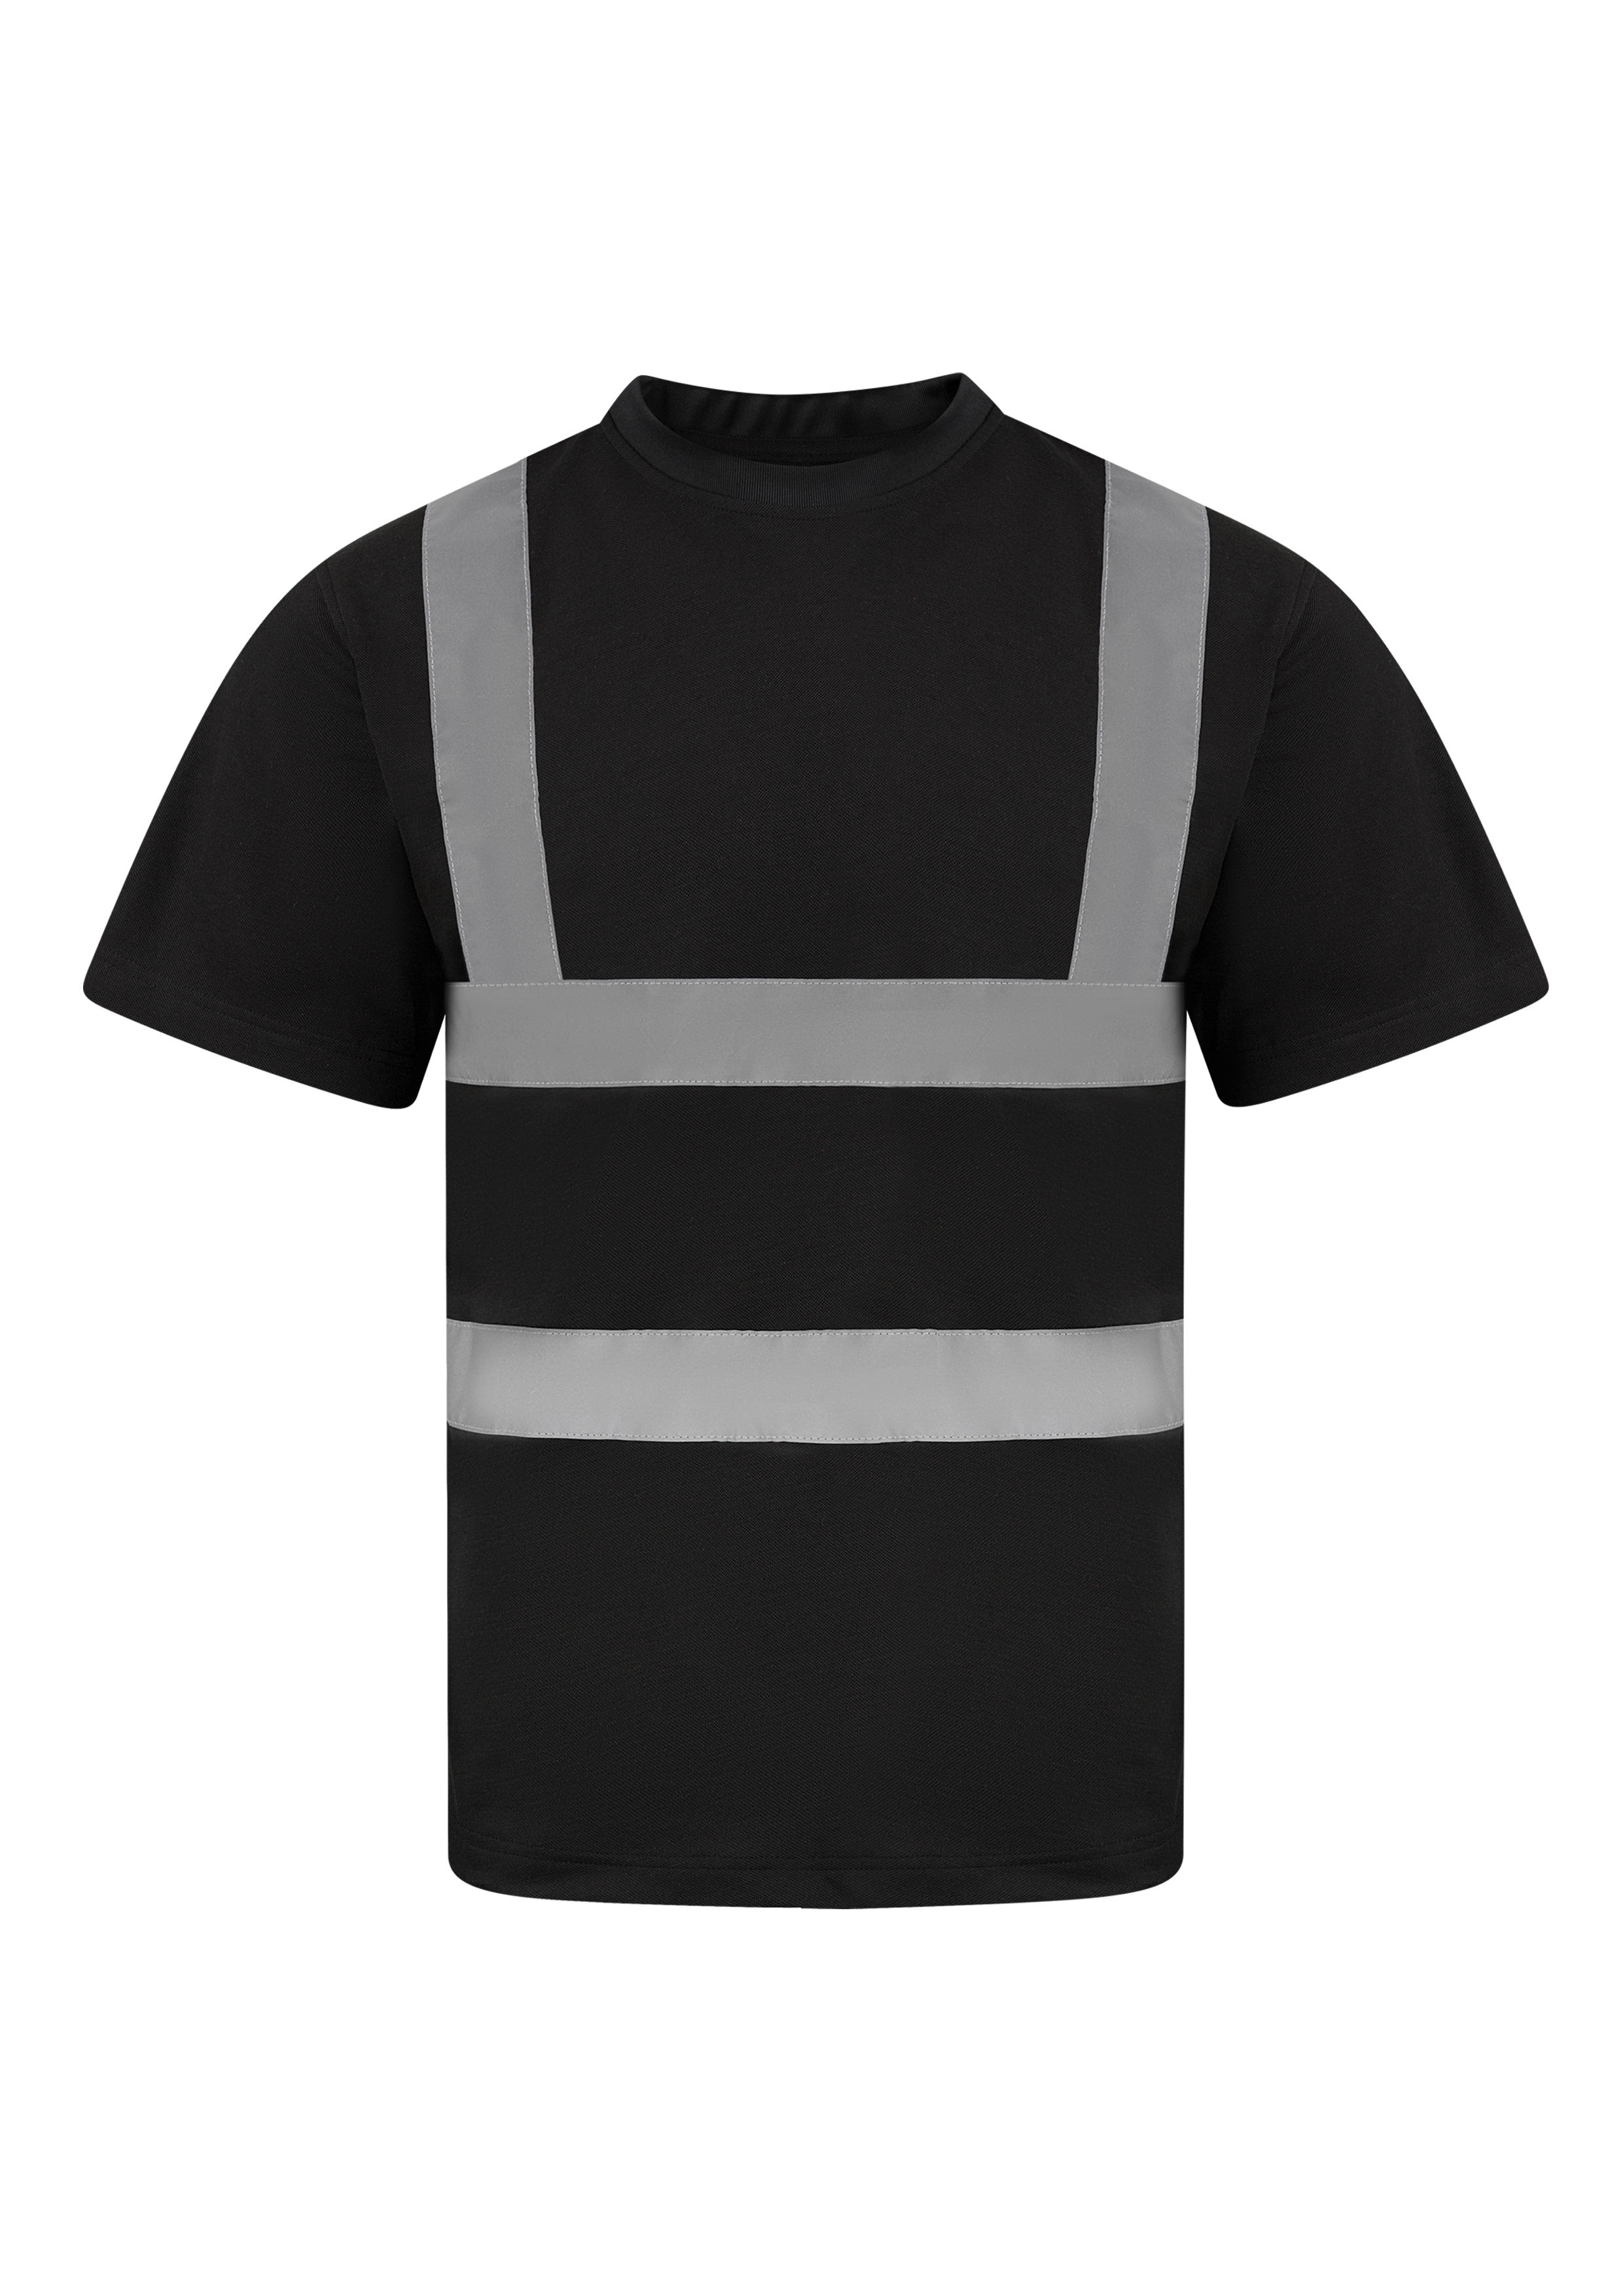 Tričko s krátkým rukávem Korntex Heavy Duty Polycotton Hi-Vis T-Shirt Barcelona